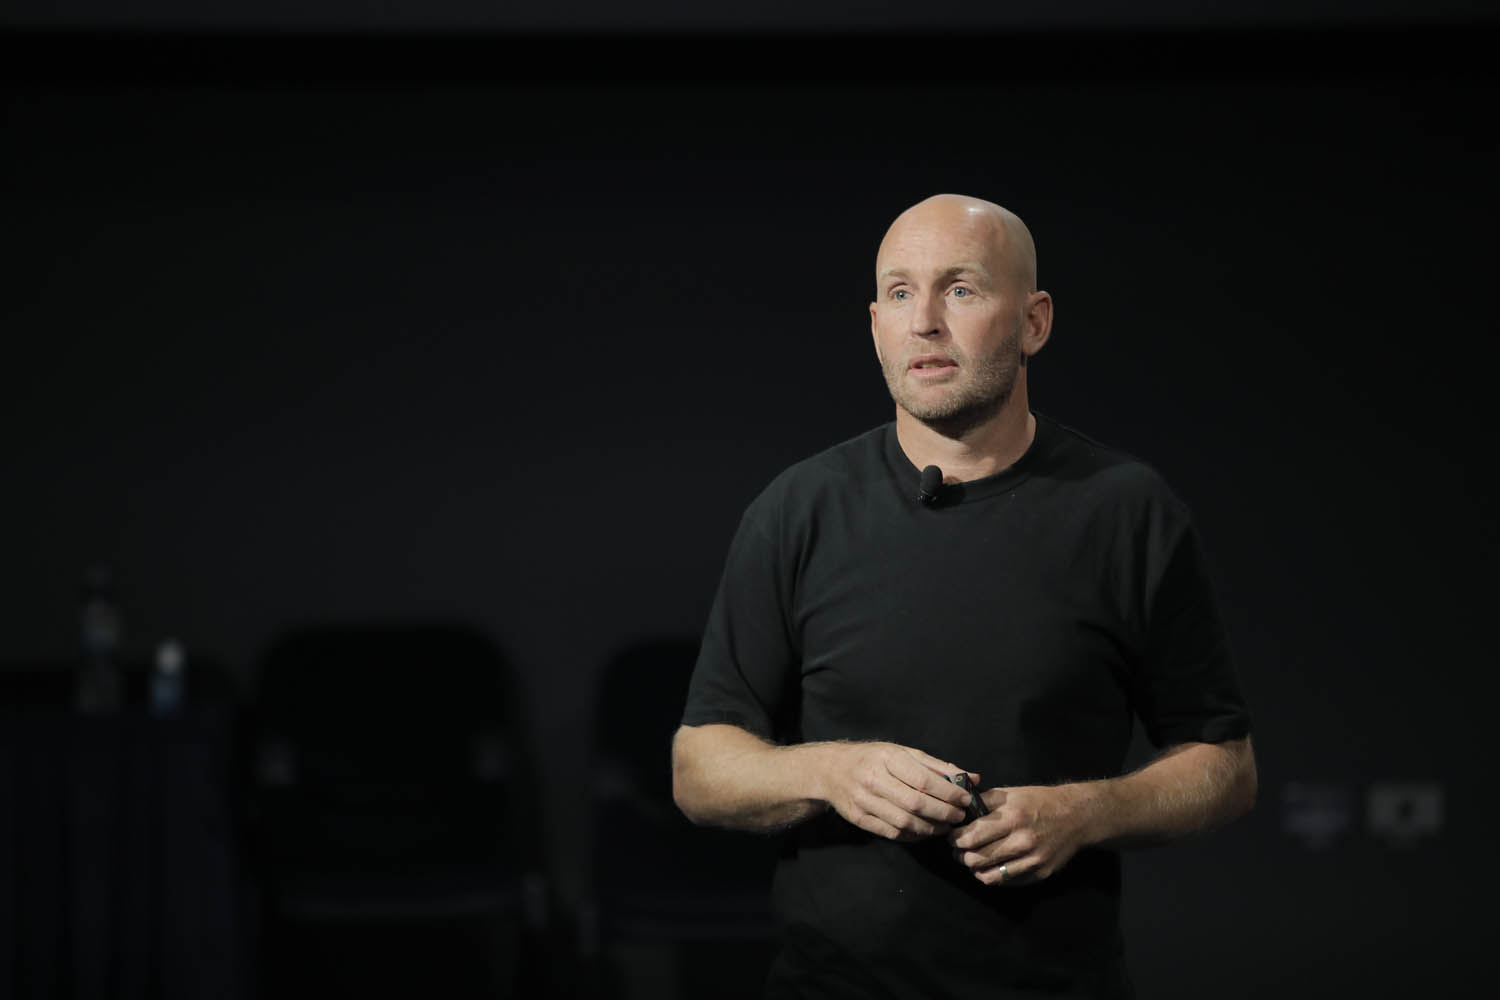 A man in black T-shirt talking